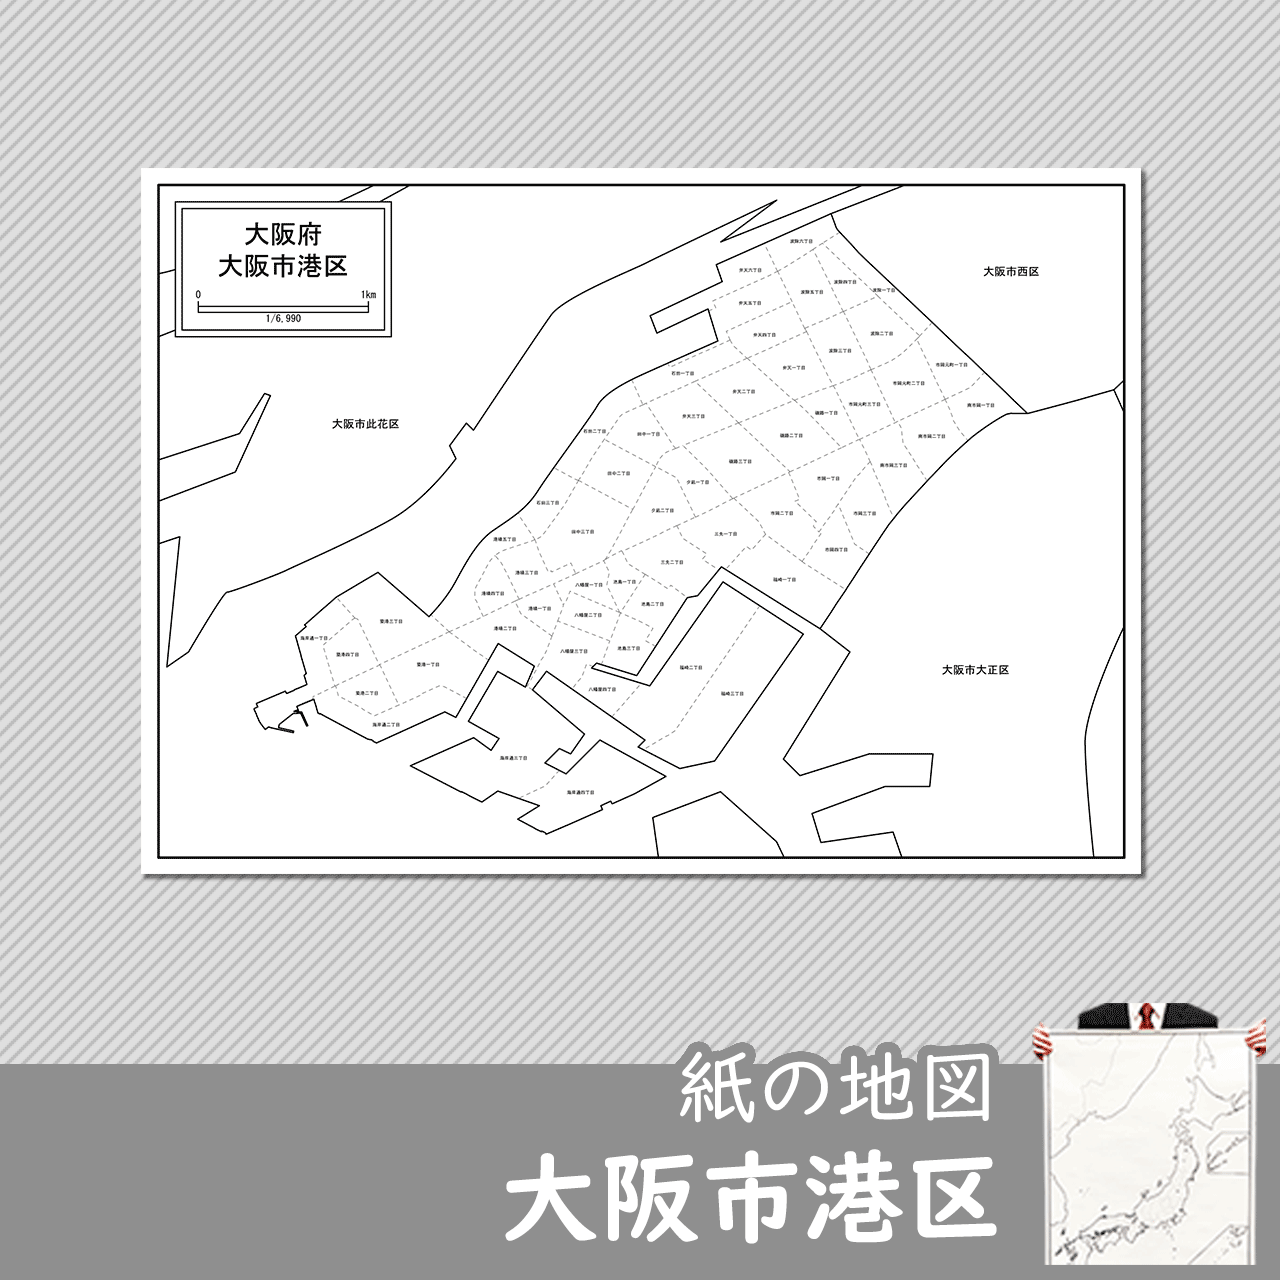 大阪市港区の紙の白地図のサムネイル